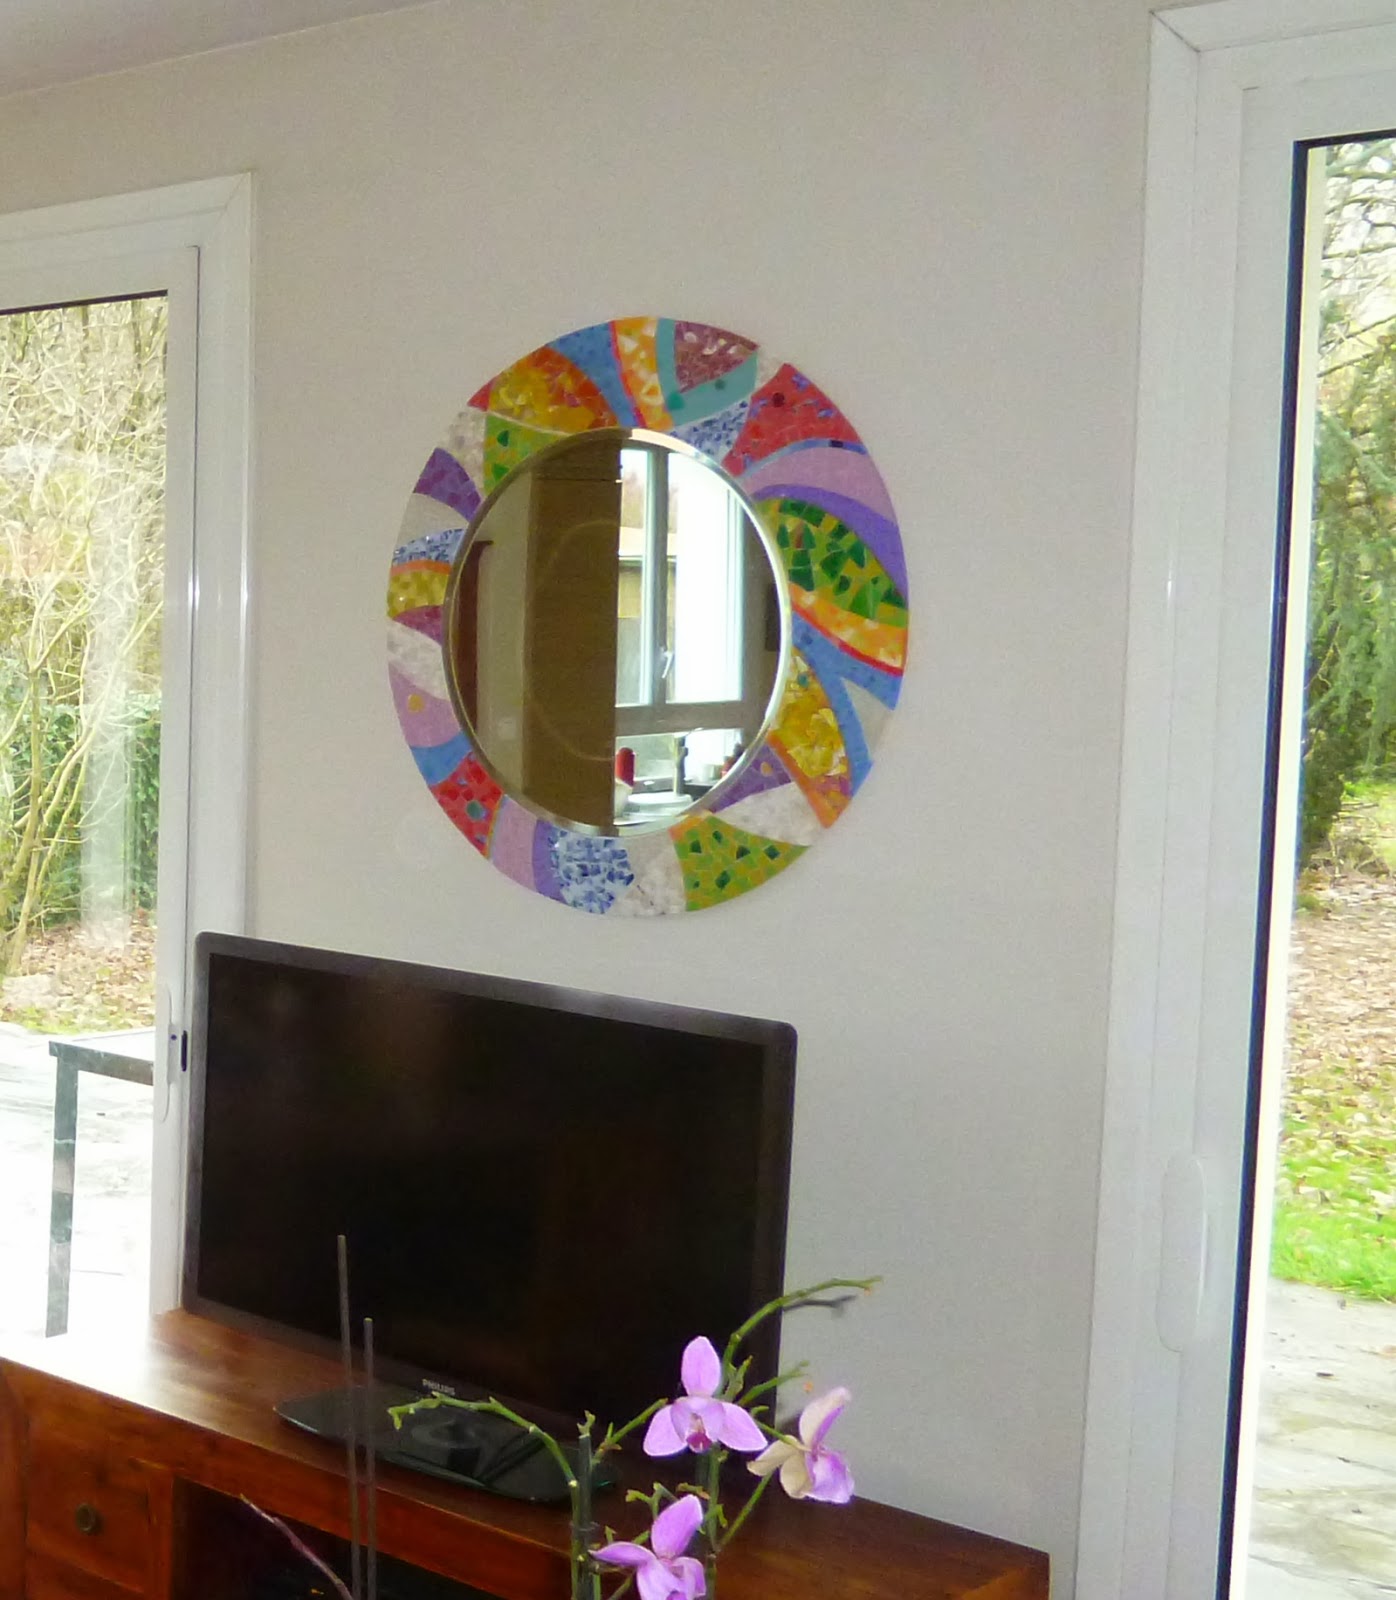 vente d'un miroir rond en mosaique pour décoration d'un salon de maison par mosaiste mimi vermicelle